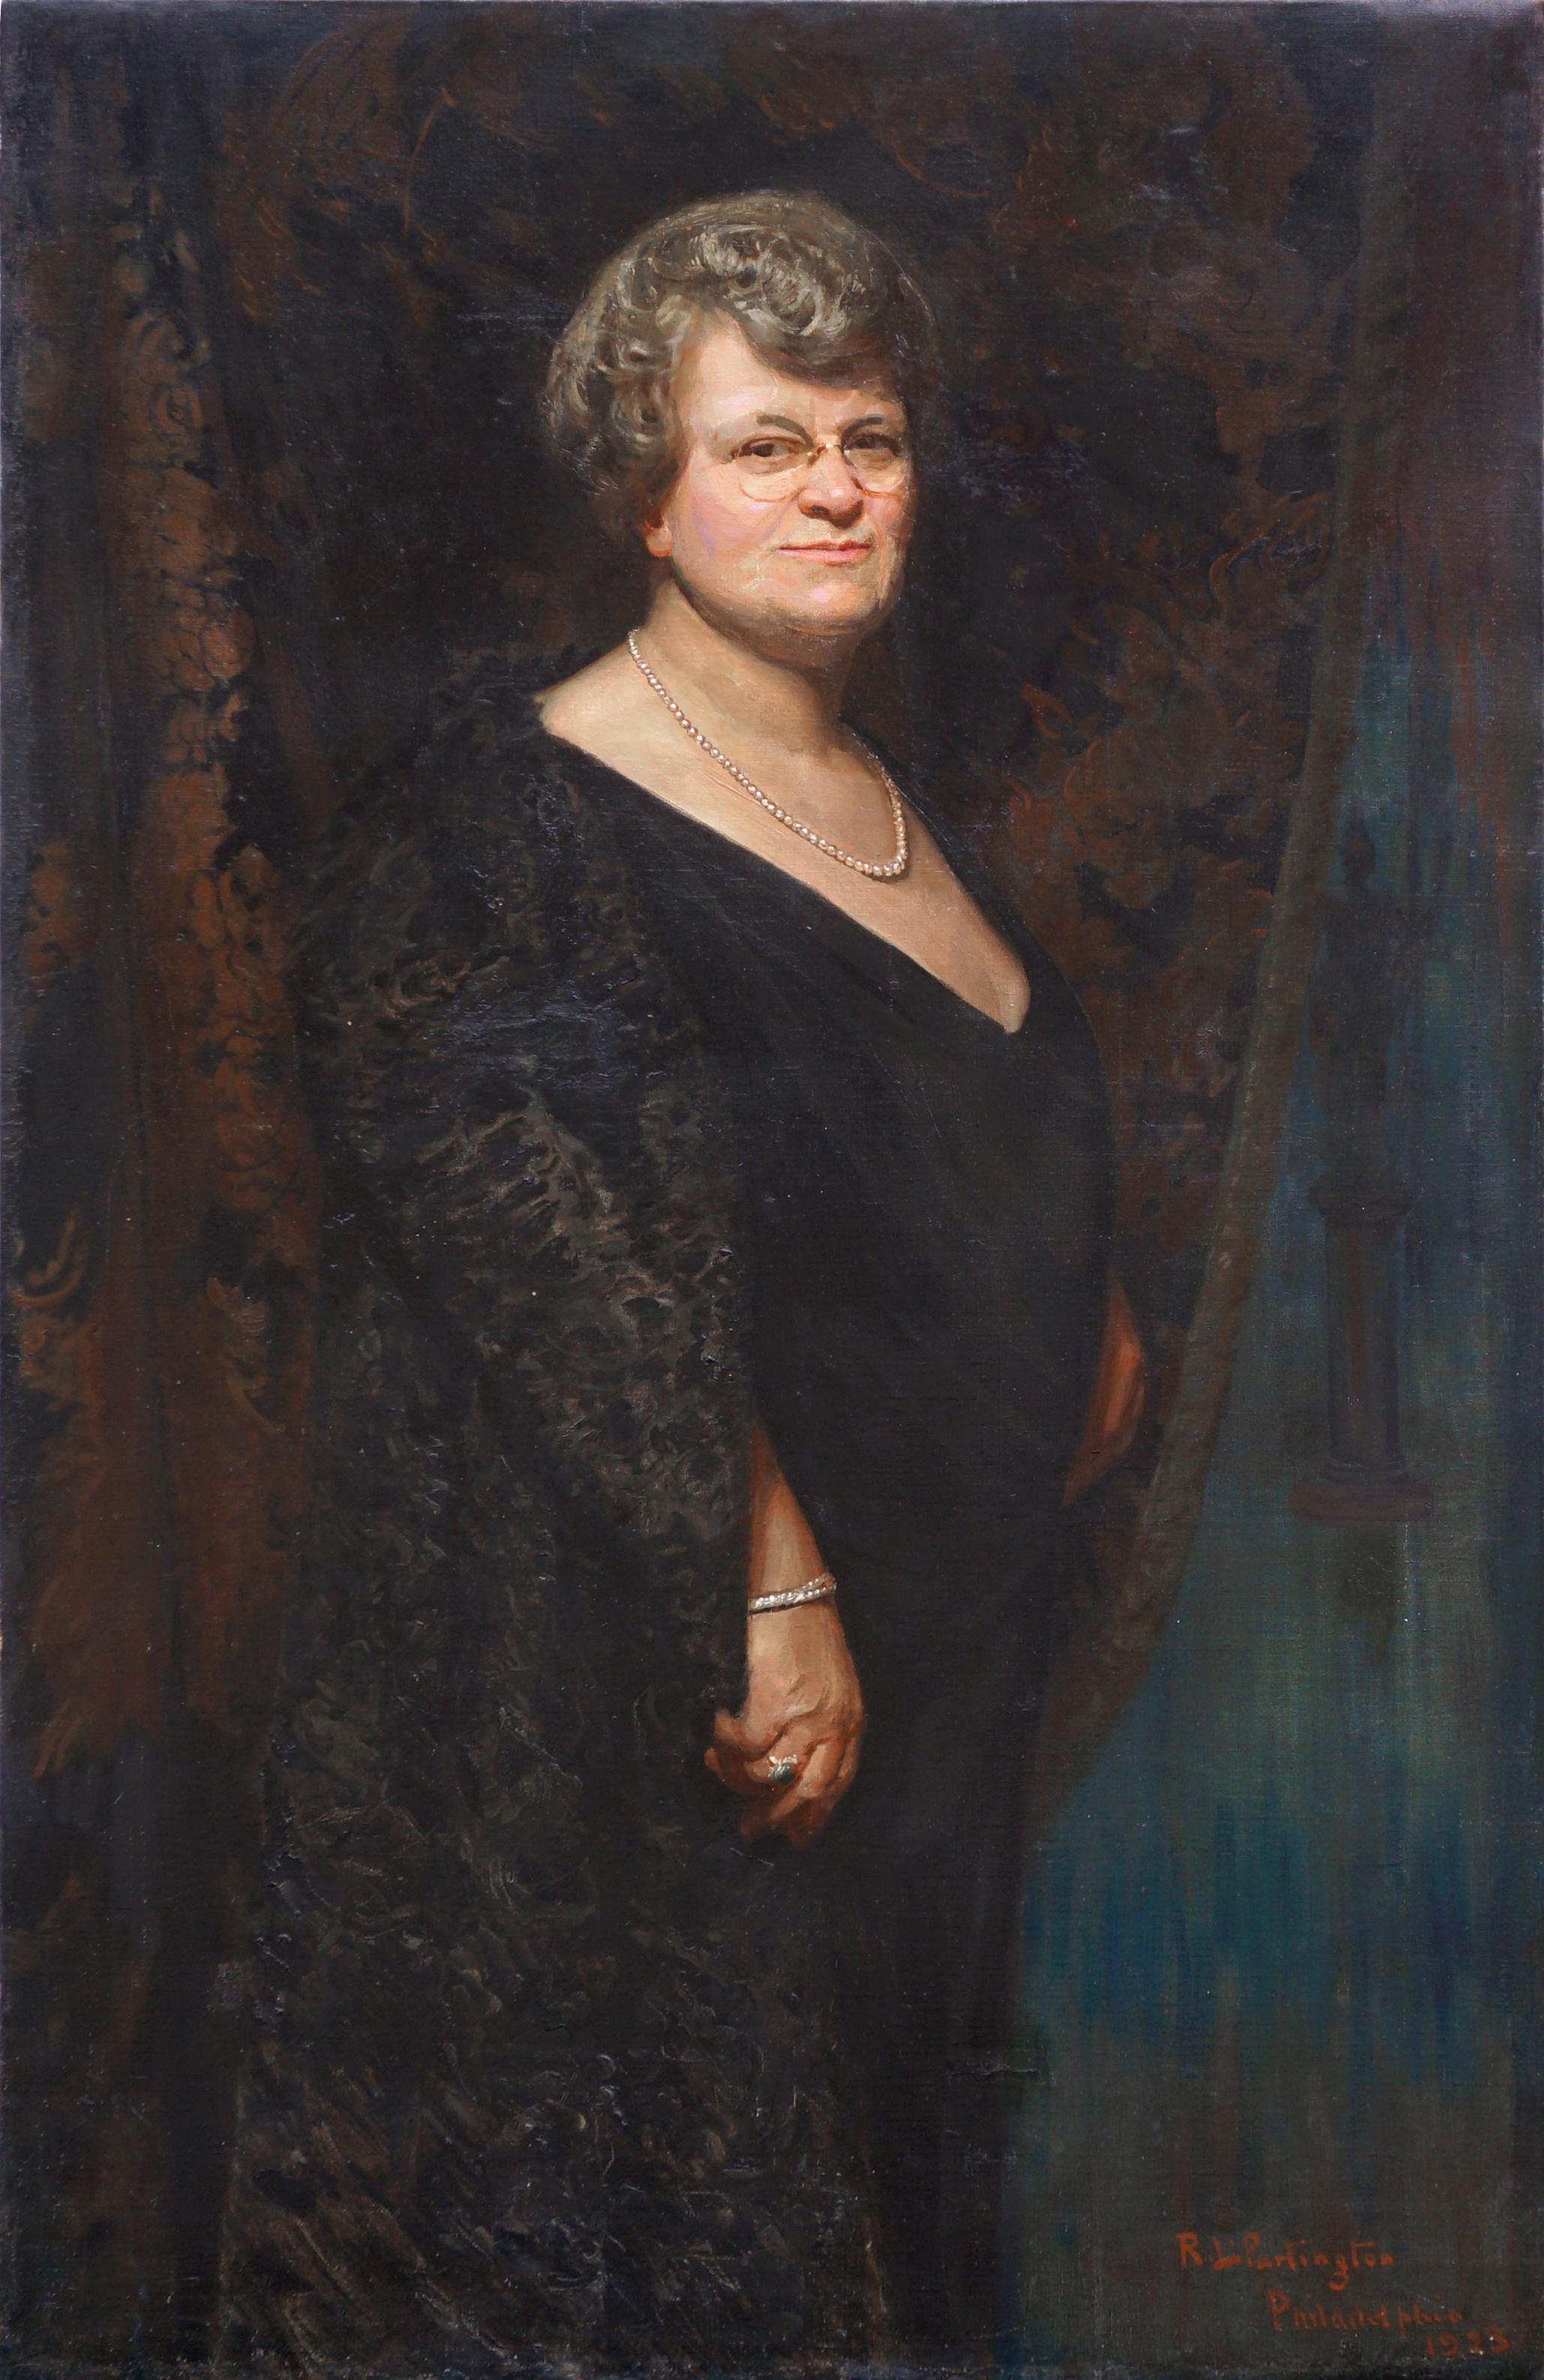 Richard Langtry Partington  Portrait Painting - Large Scale 1920s Portrait of Florence Foster Jenkins, Amateur Soprano Singer 